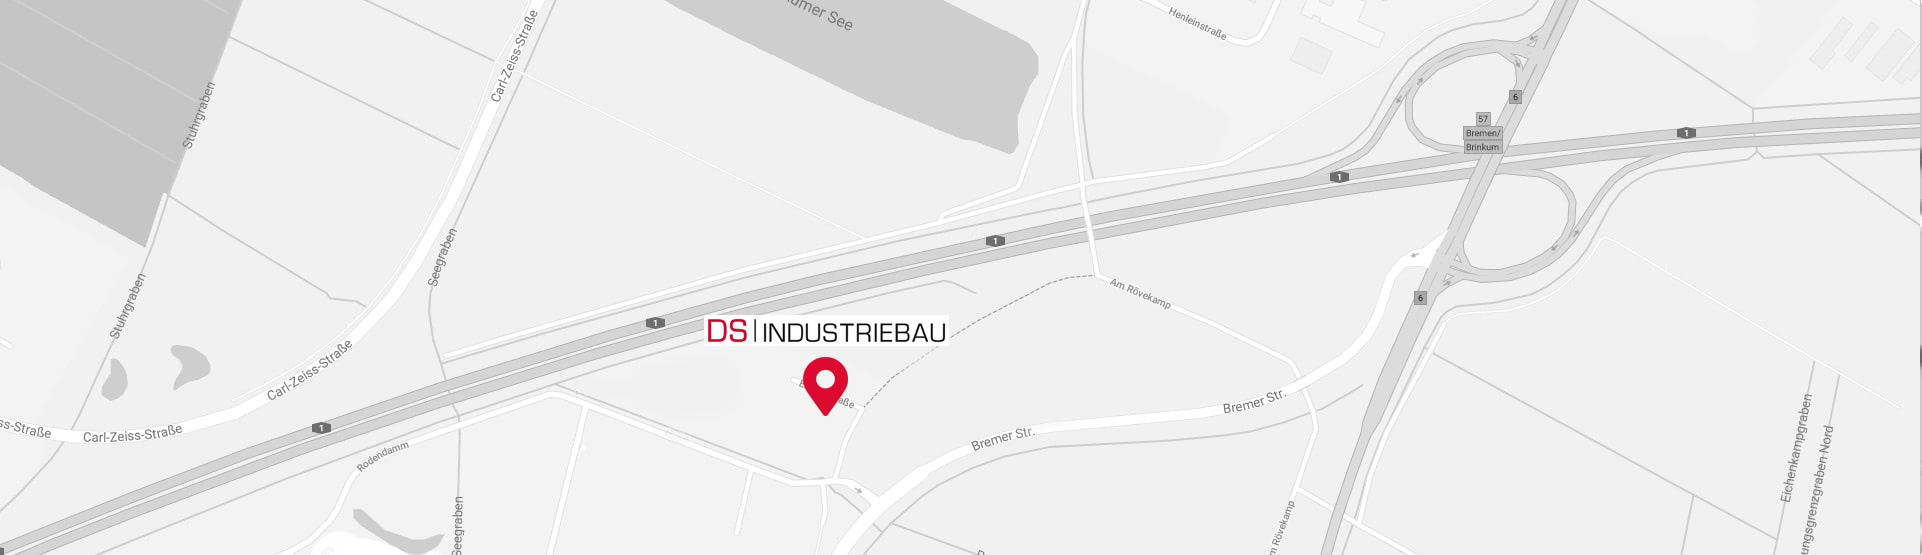 Google Maps DS Industriebau